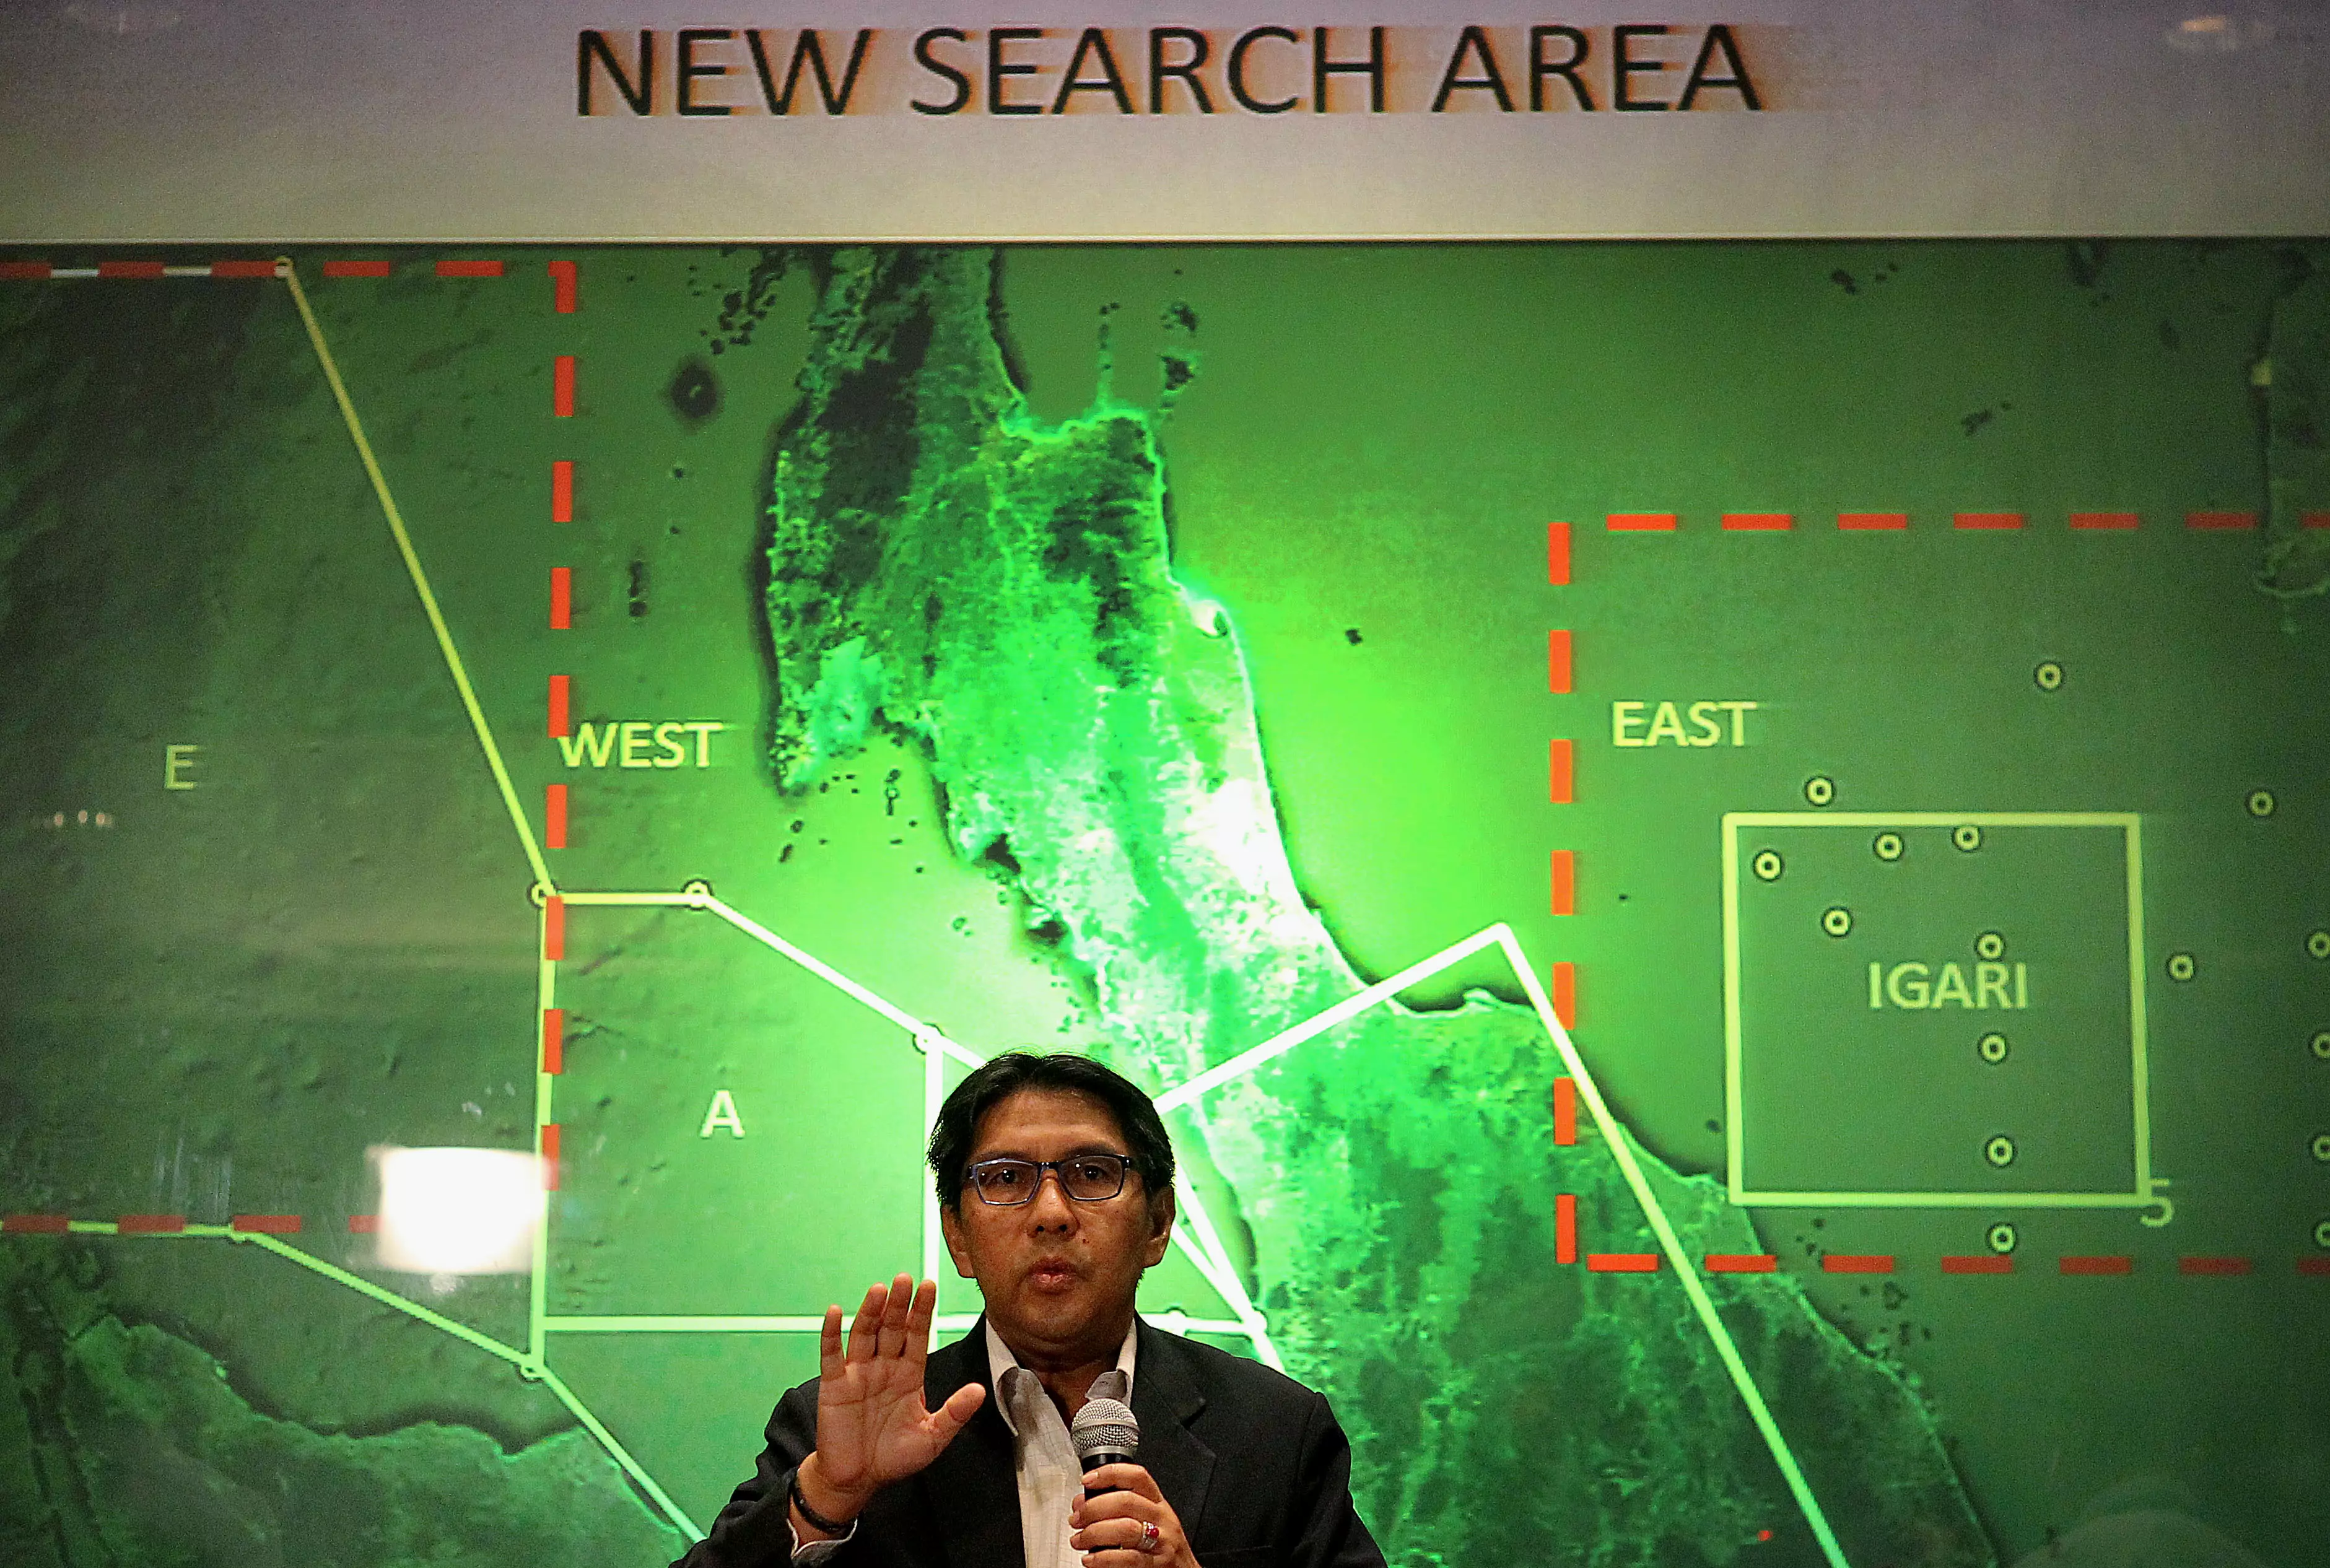 ראש מנהל התעופה האזרחית, אזהרודין עבדול רחמן, מציג את אזורי החיפוש